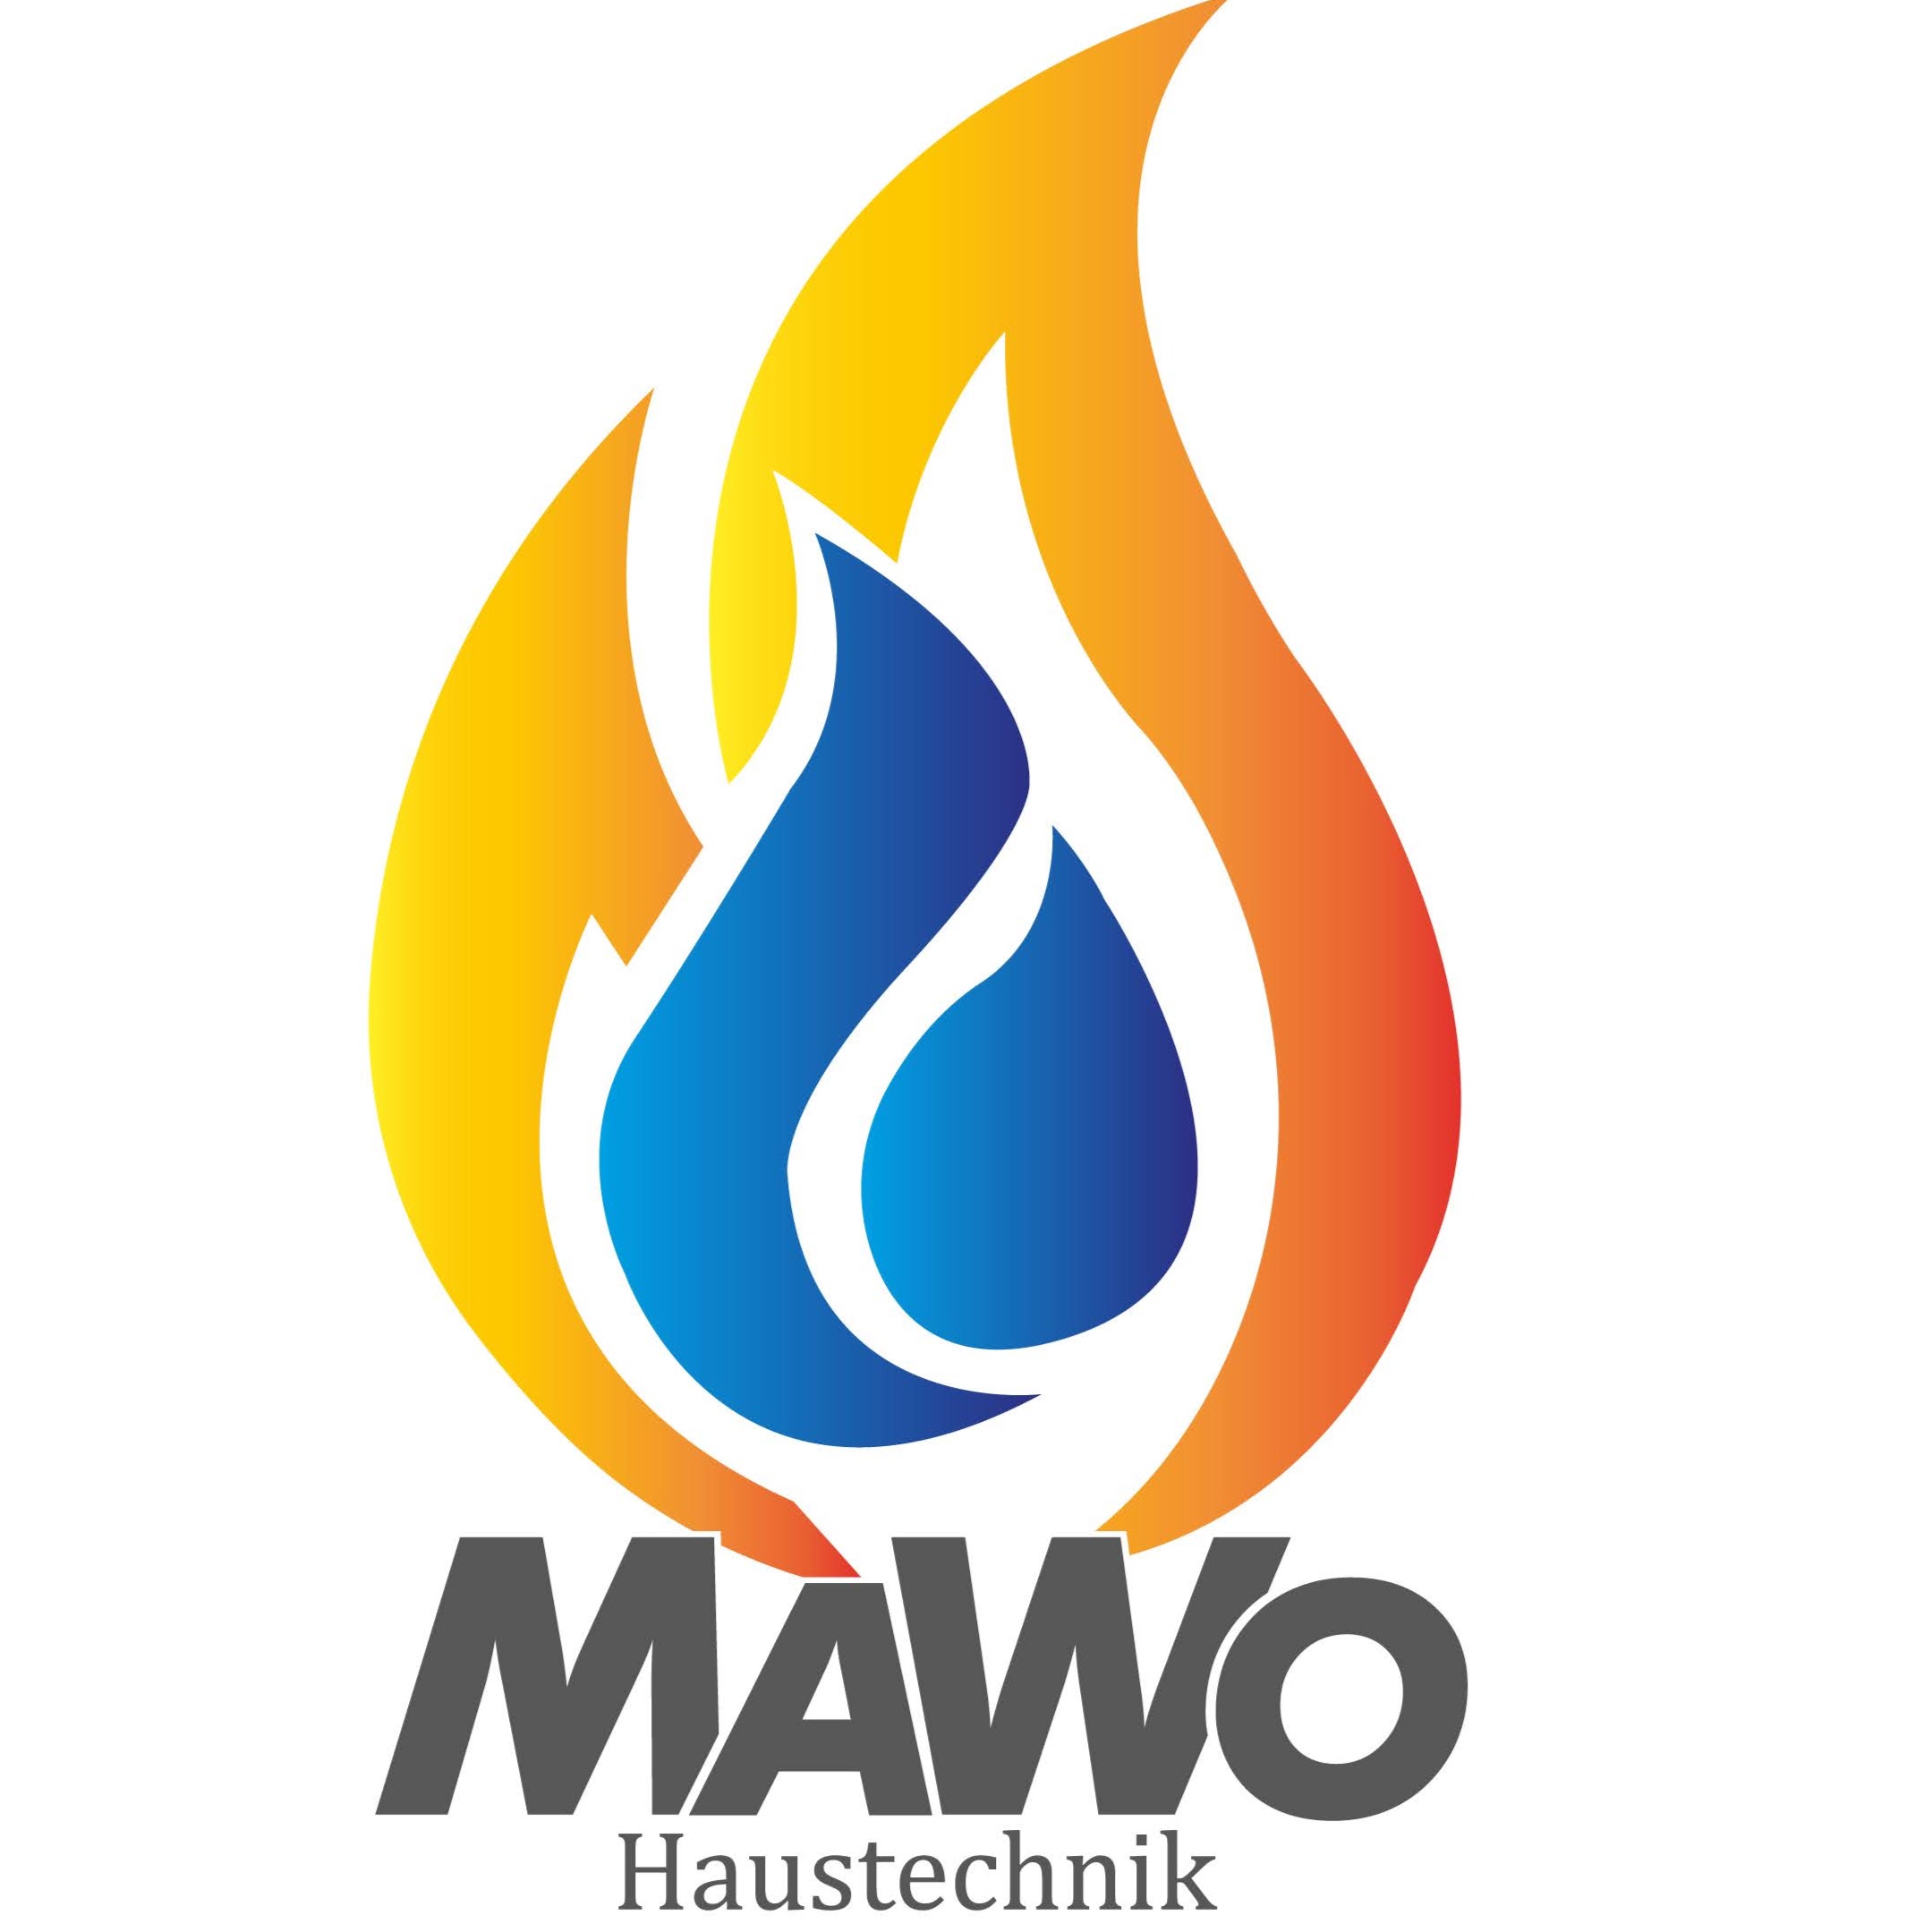 MaWo Haustechnik - Heizung, Sanitär, Klima & Lüftung - Knittelfeld logo